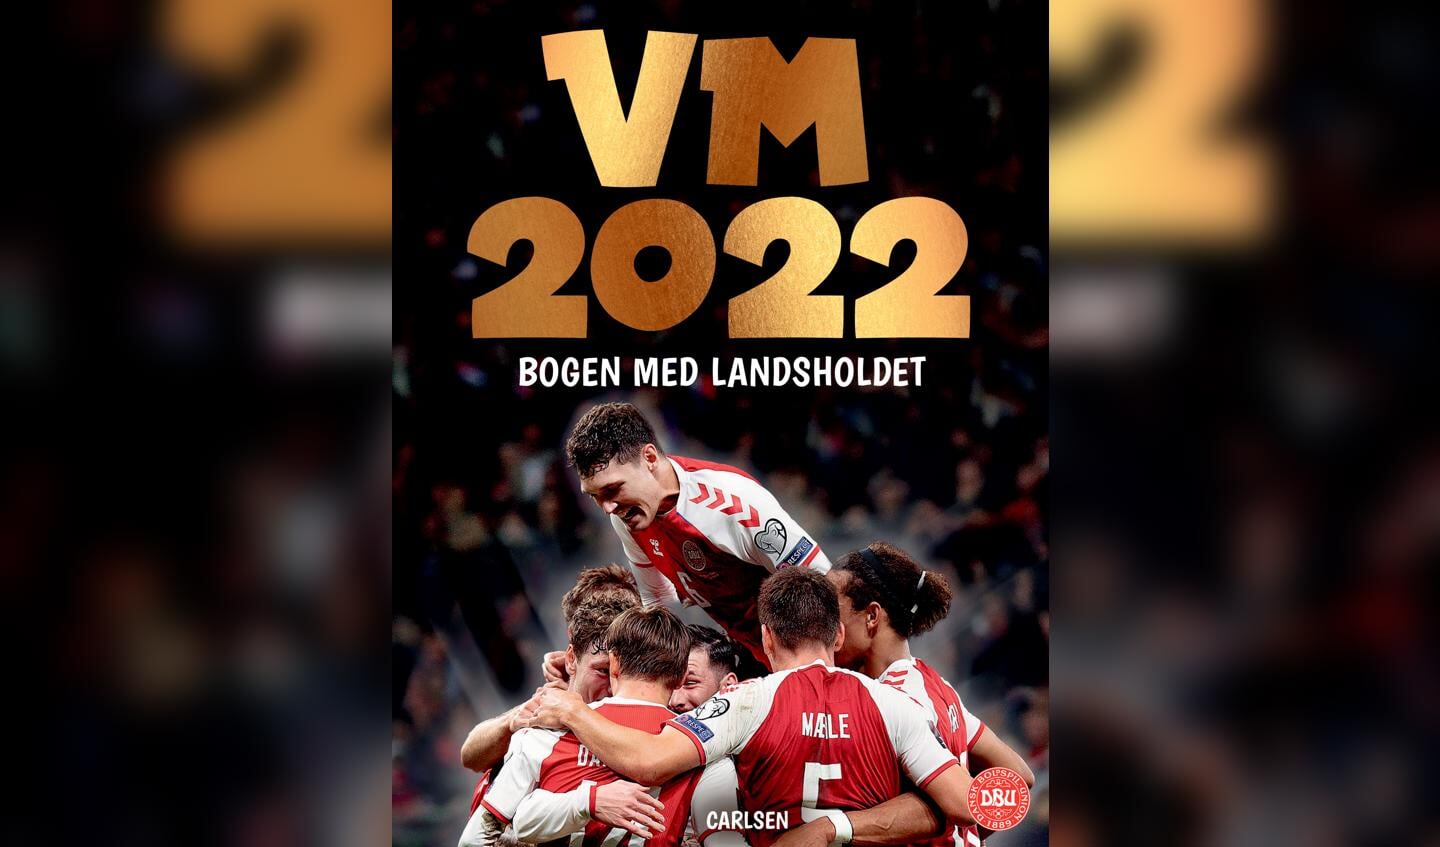 Titel: VM 2022Forfattere: Ole Sønnichsen & Jesper Roos JacobsenForlag: